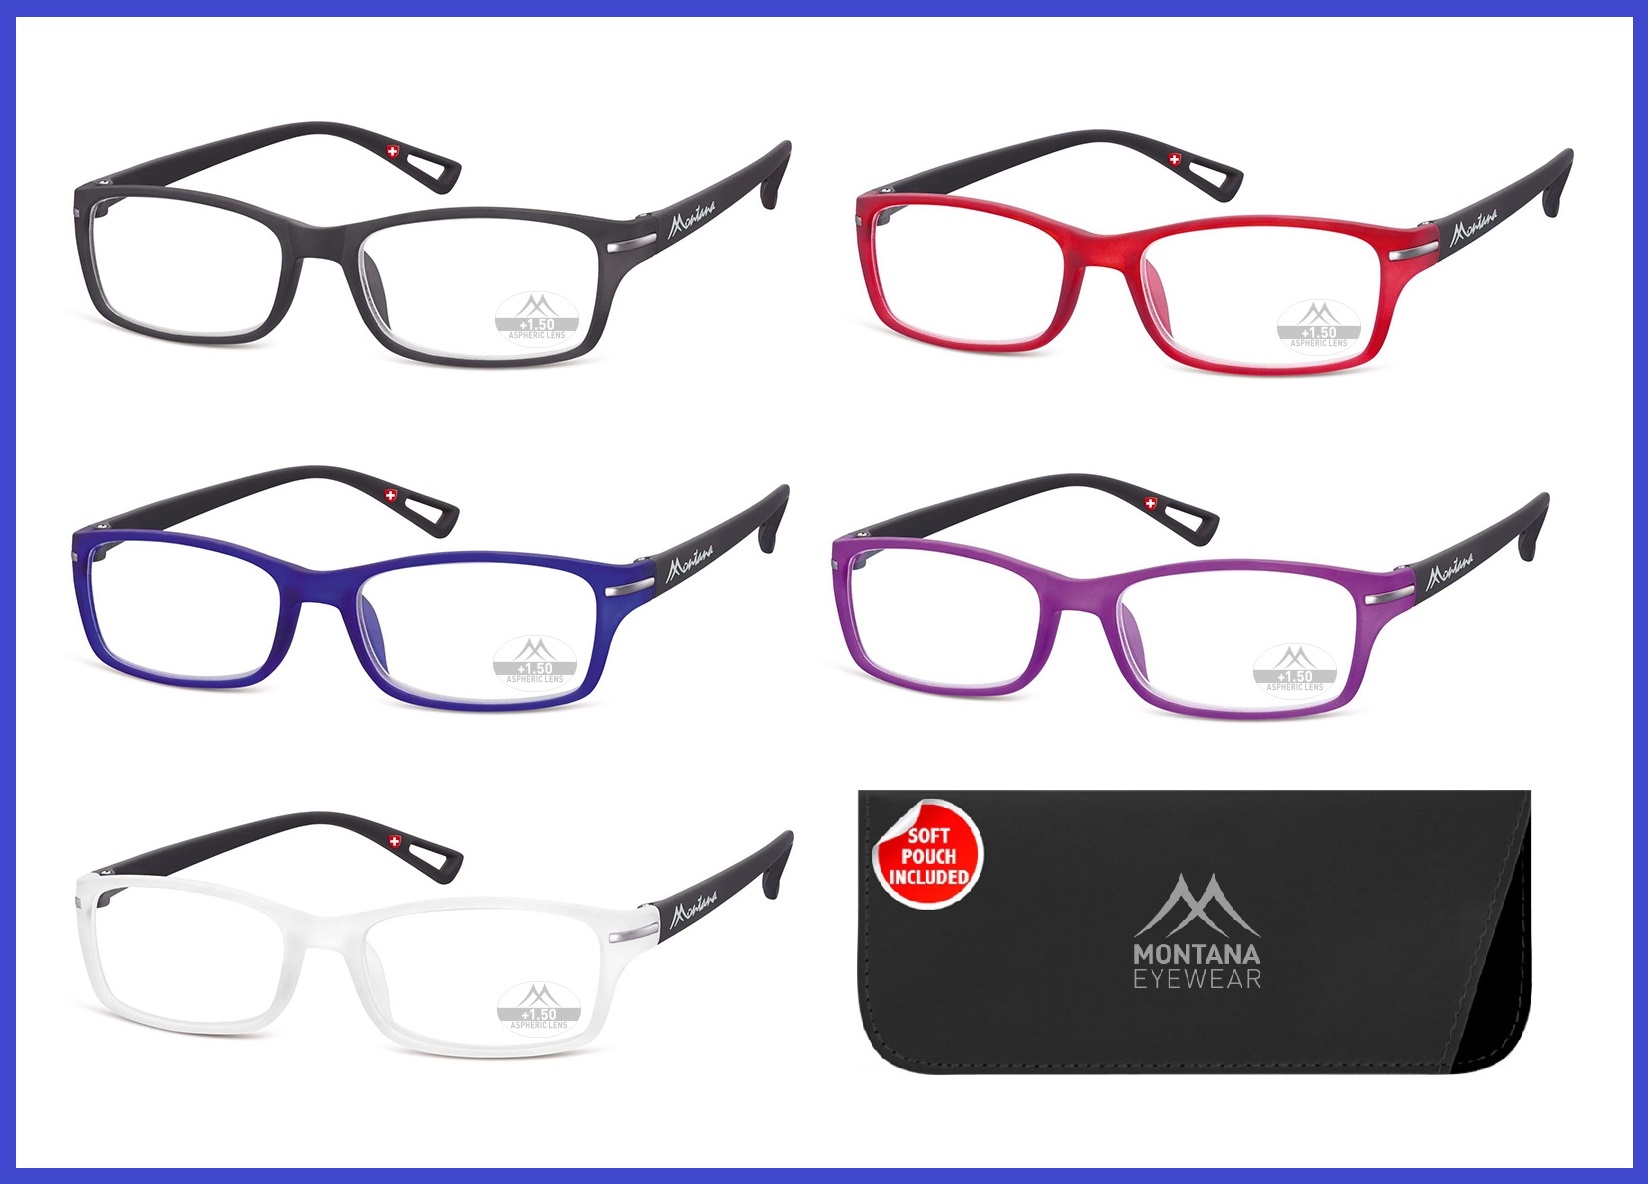 occhiali per lettura occhiale da vicino uomo donna occhiali trasparenti nero + 1 2 3 bicolore unisex montatura lenti blu neri trasparente presbiopia graduati colorato vista di qualità presbiti colorati gradazione gradi diottrie 50 1.5 2 5 2.5 3.5 3 1 1,5 2,5 3,5 1,50 2,50 3,50 1.50 2.50 3.50